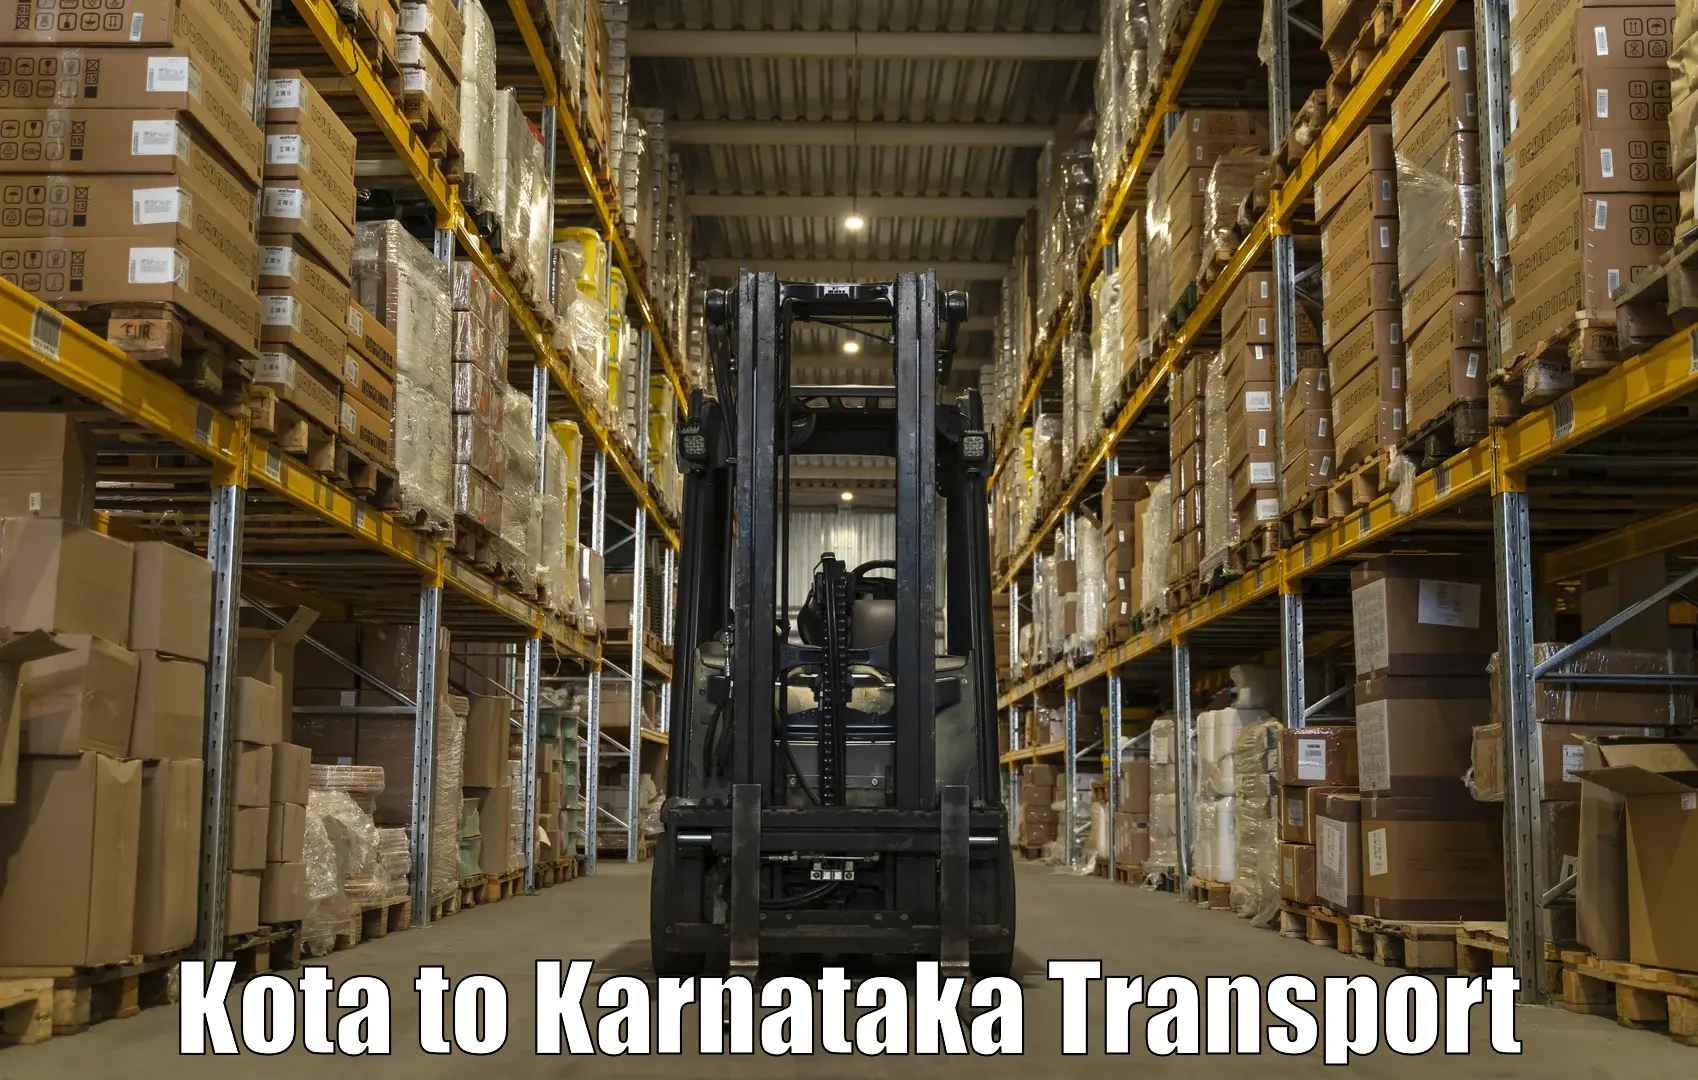 Daily transport service in Kota to Panja Dakshin Kannad